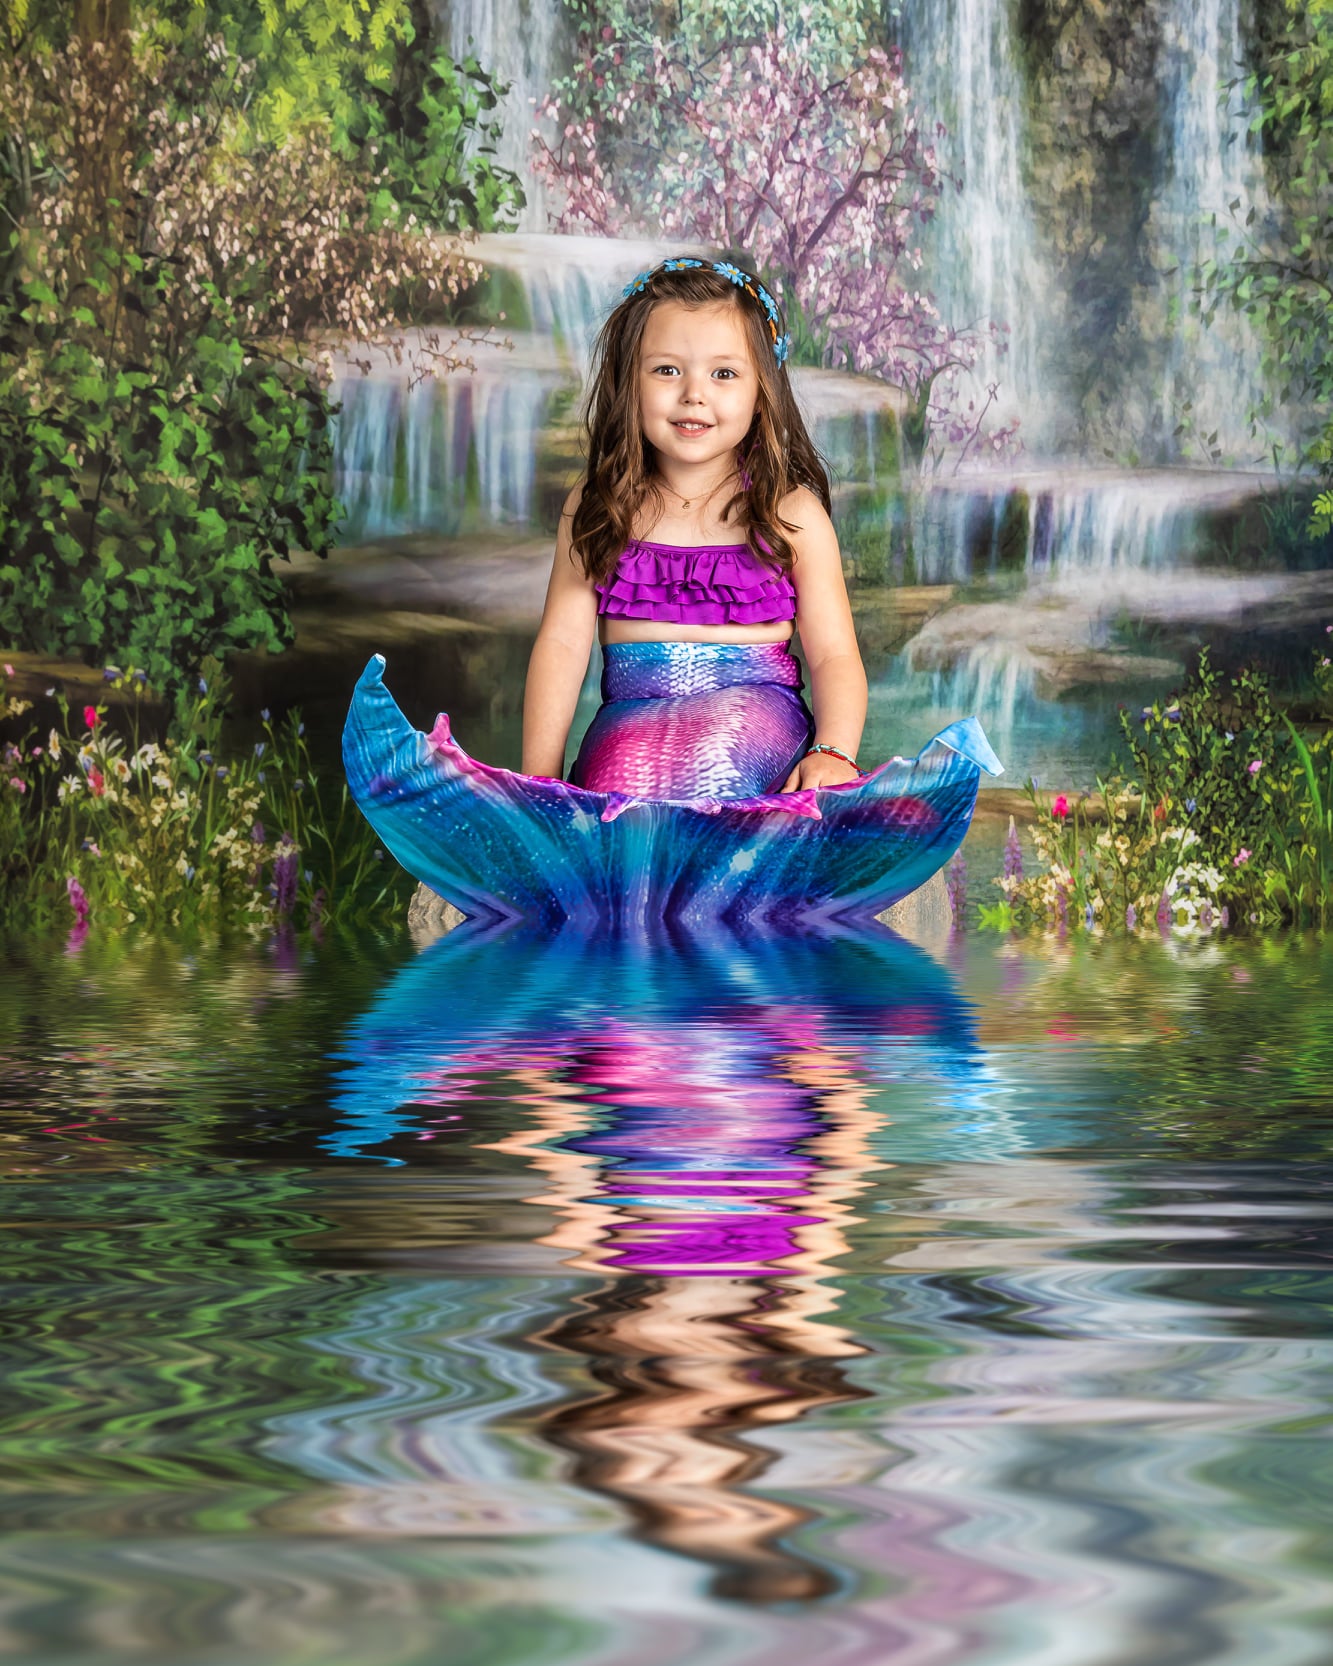 Kate Mermaid Stream Water Spring Backdrop